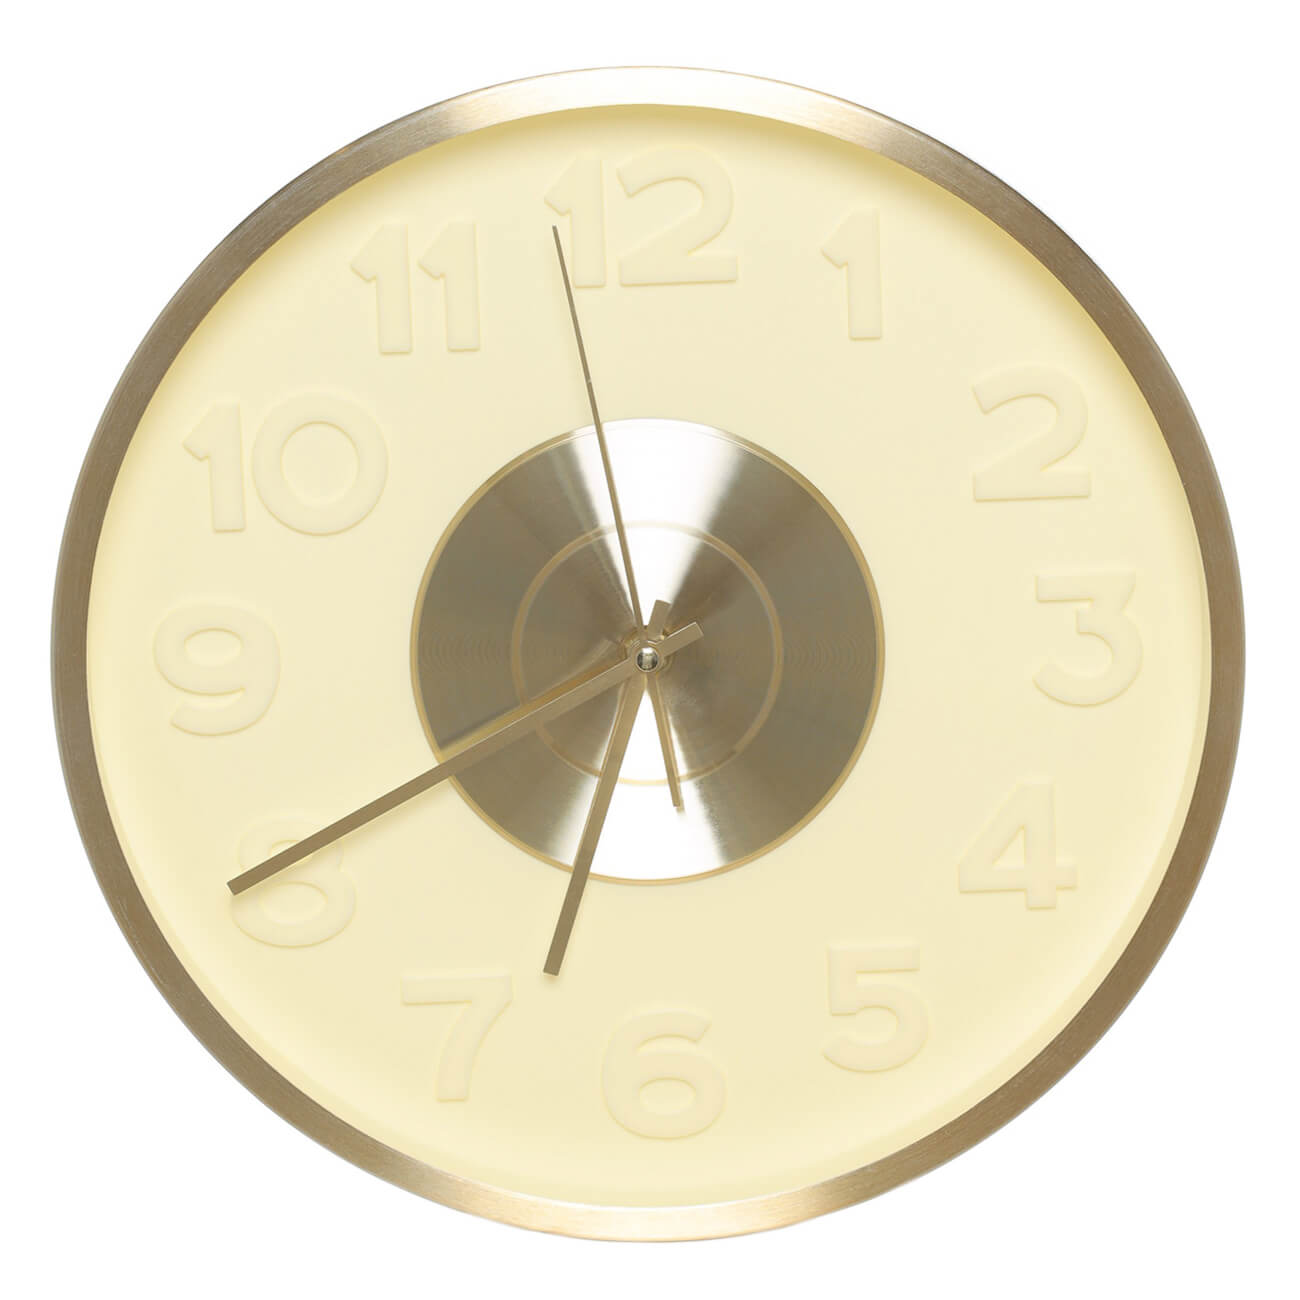 Часы настенные, 30 см, с подсветкой, пластик/стекло, круглые, золотистые, Fantastic gold часы настенные vigor д 30 герб